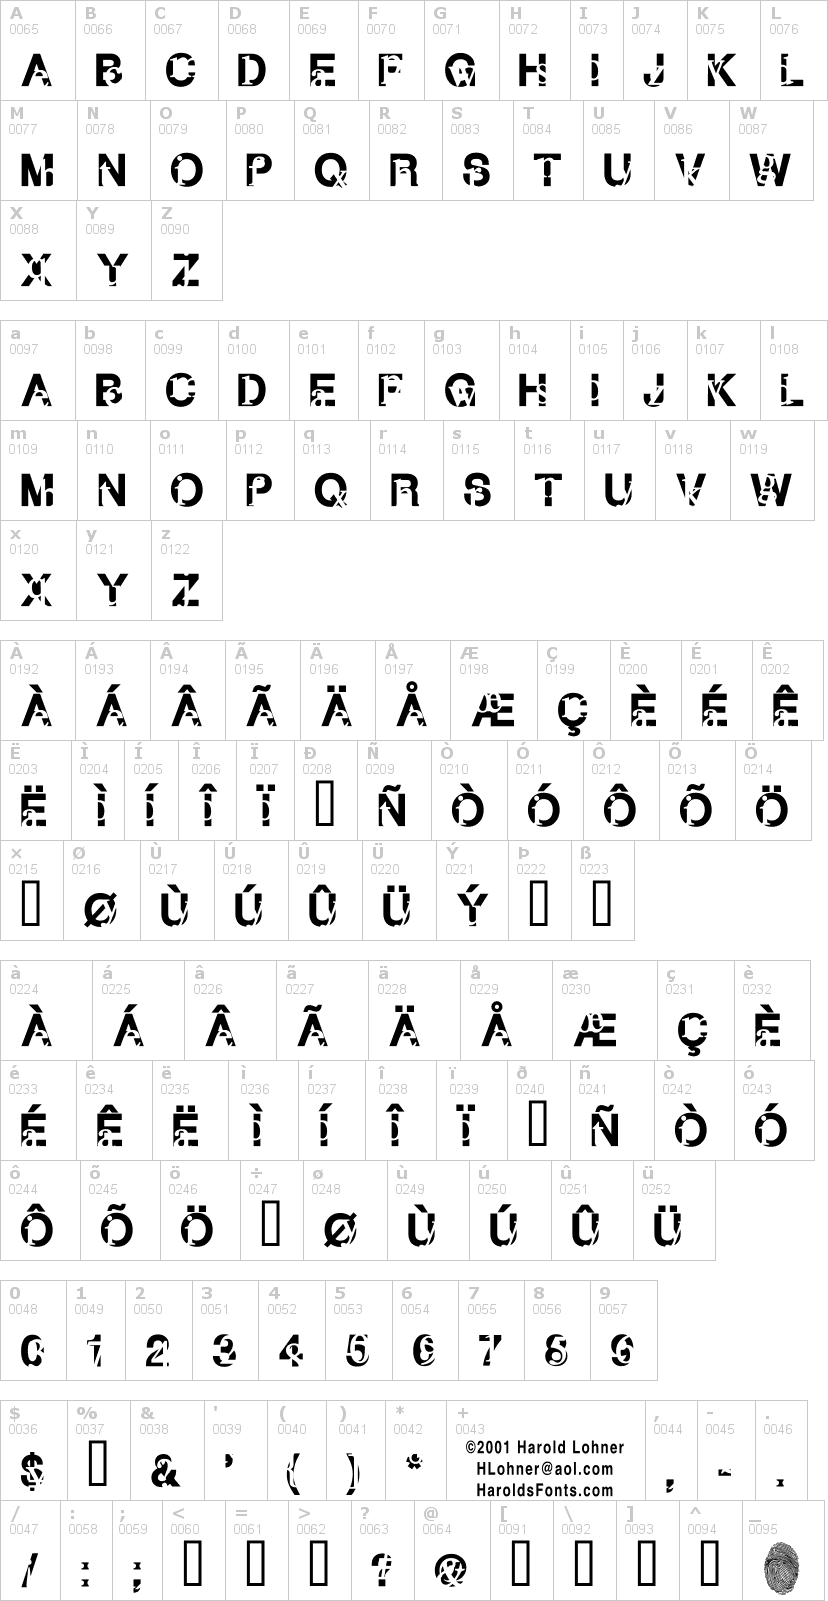 Lettere dell'alfabeto del font subtext con le quali è possibile realizzare adesivi prespaziati